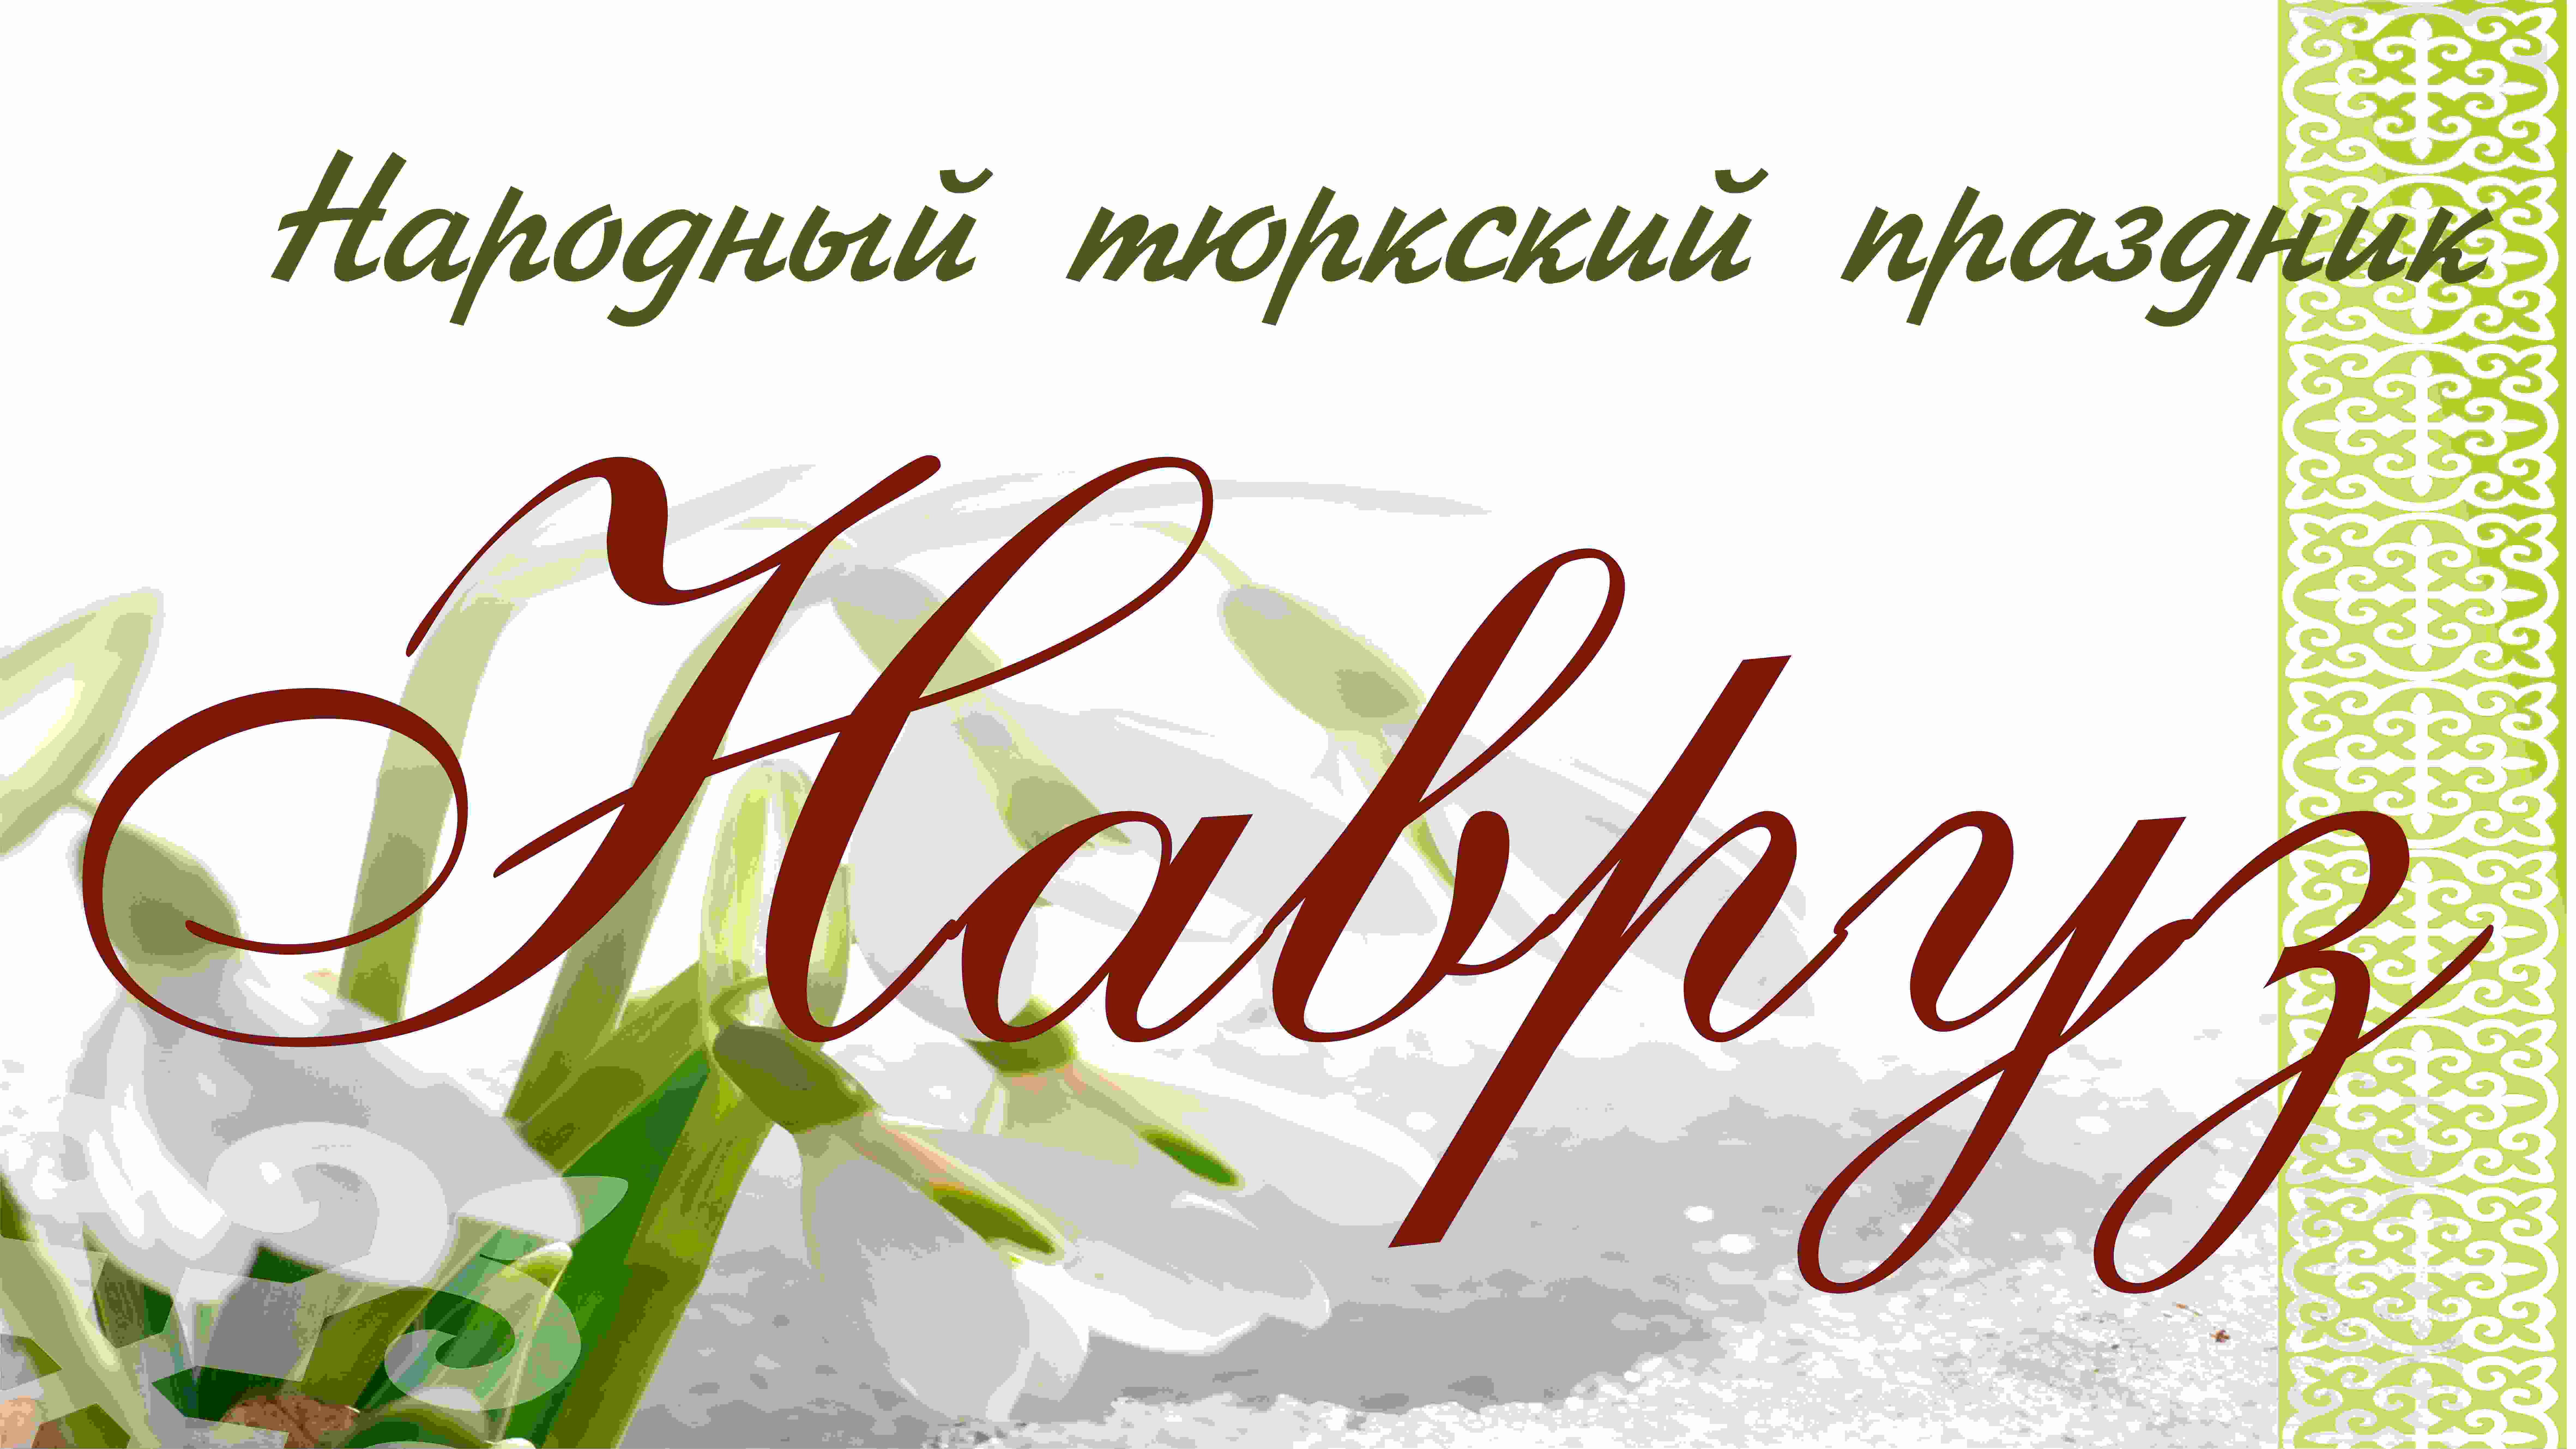 Народный праздник НАВРУЗ
23 марта 2014 года, аул Домбай, Марьяновский муниципальный район